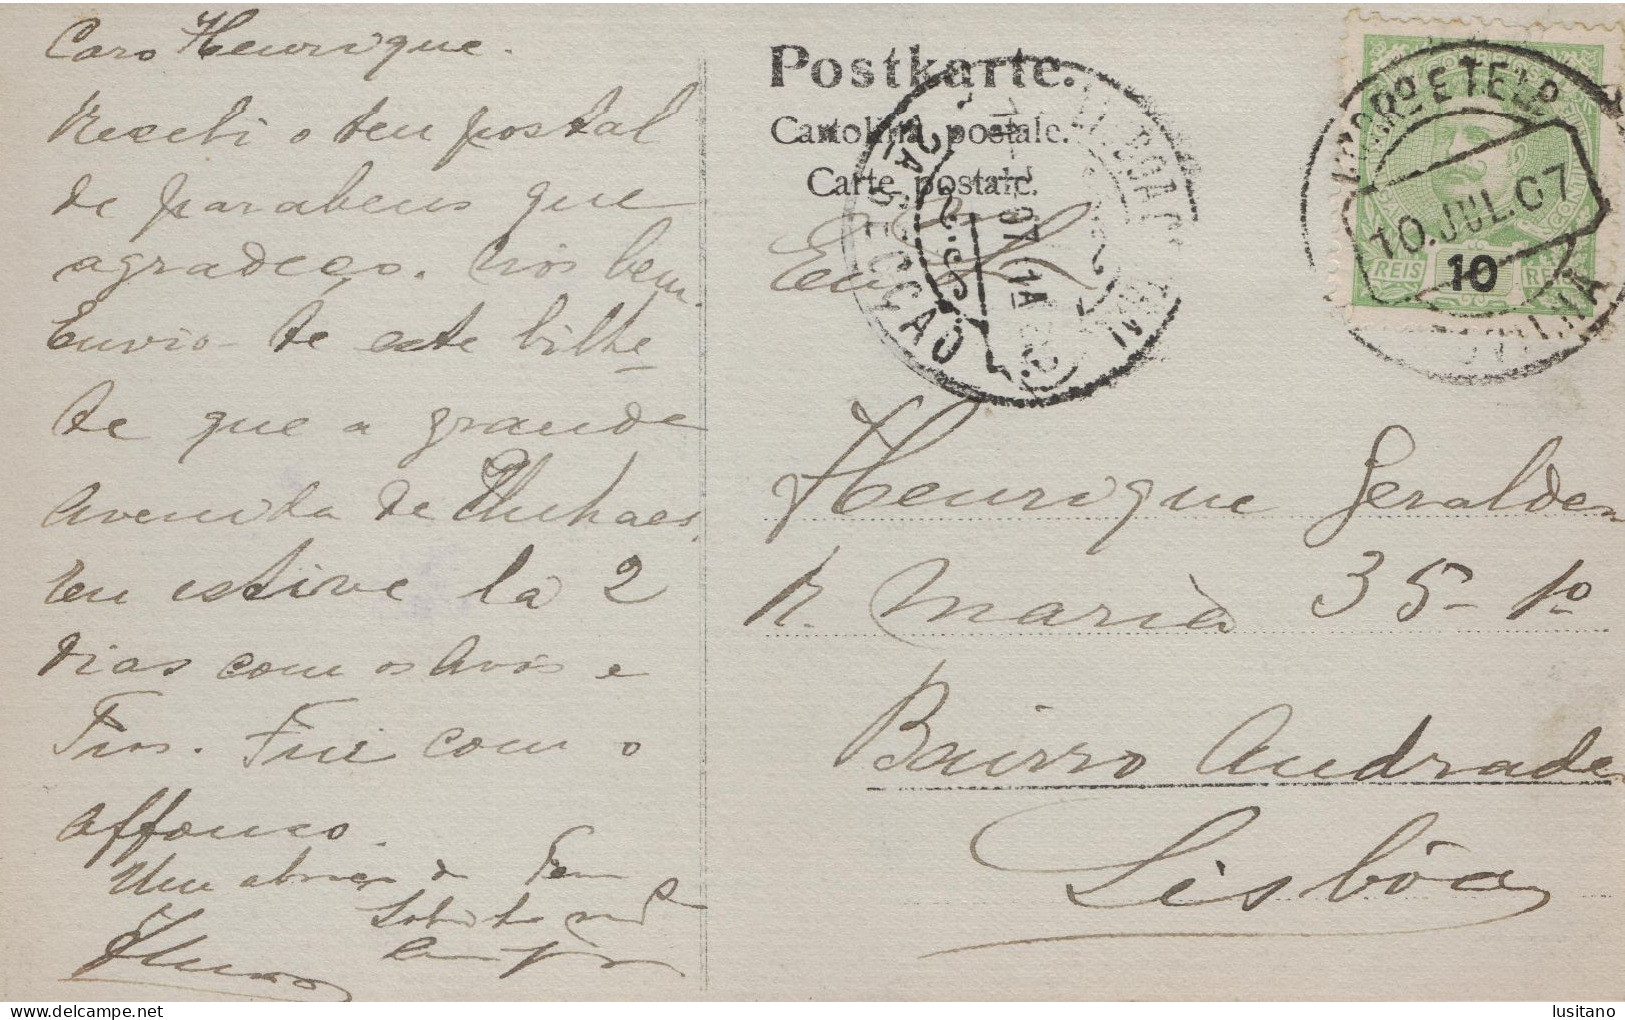 UNHAES UNHAIS DA SERRA - AVENIDA - COVILHA Selo Stamp 1907 - Serra Da Estrela - PORTUGAL - Castelo Branco